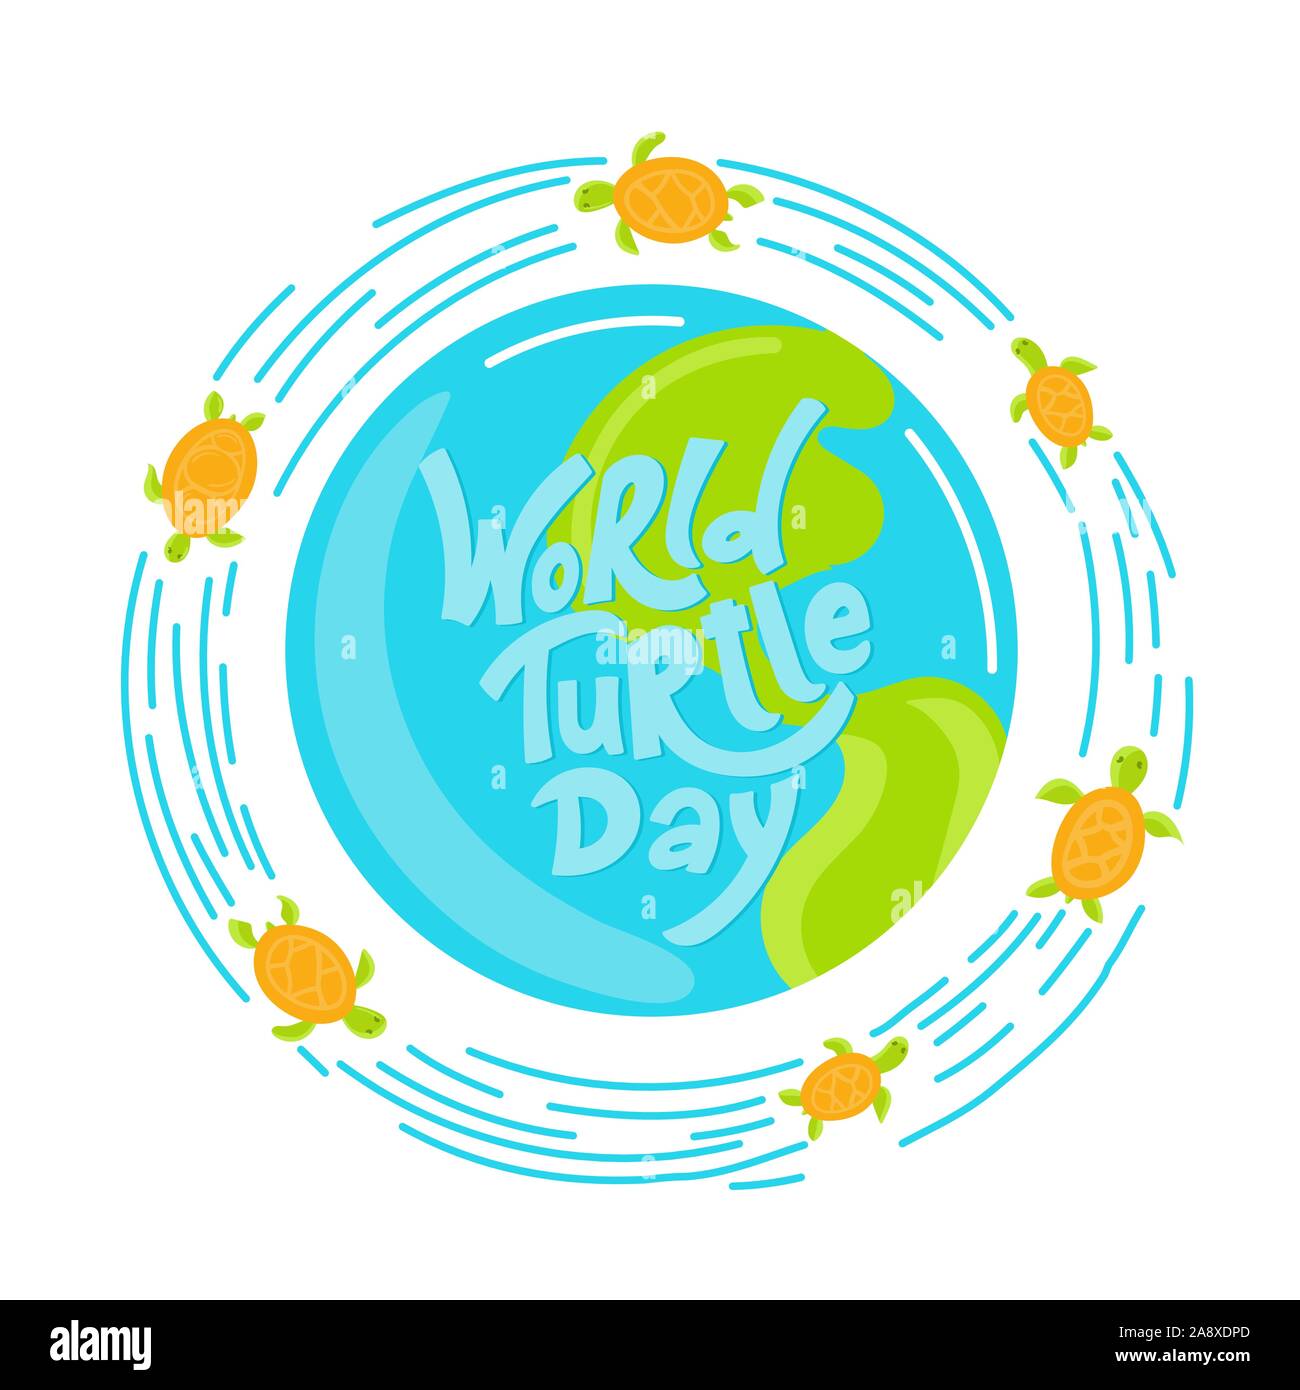 Welt Turtle Tag 23. Mai Hintergrund. Schriftzug mit Hand gezeichnete Elemente. Moderne doodle Stil. Vector Illustration. Stock Vektor